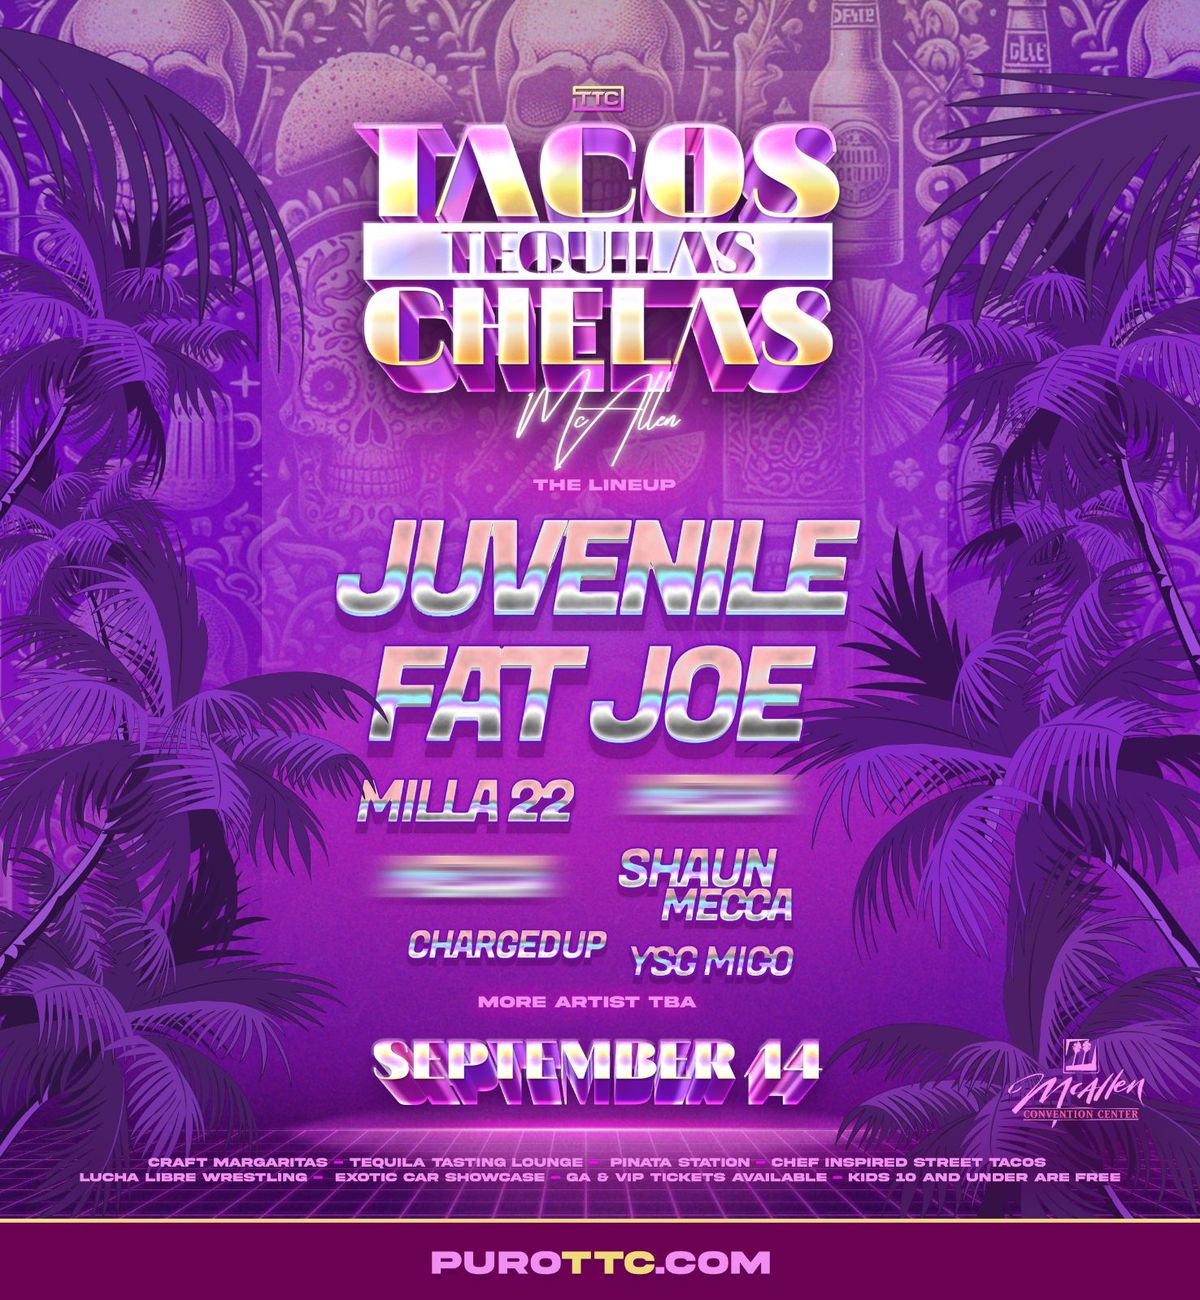 Tacos, Tequilas, Chelas Festival McAllen